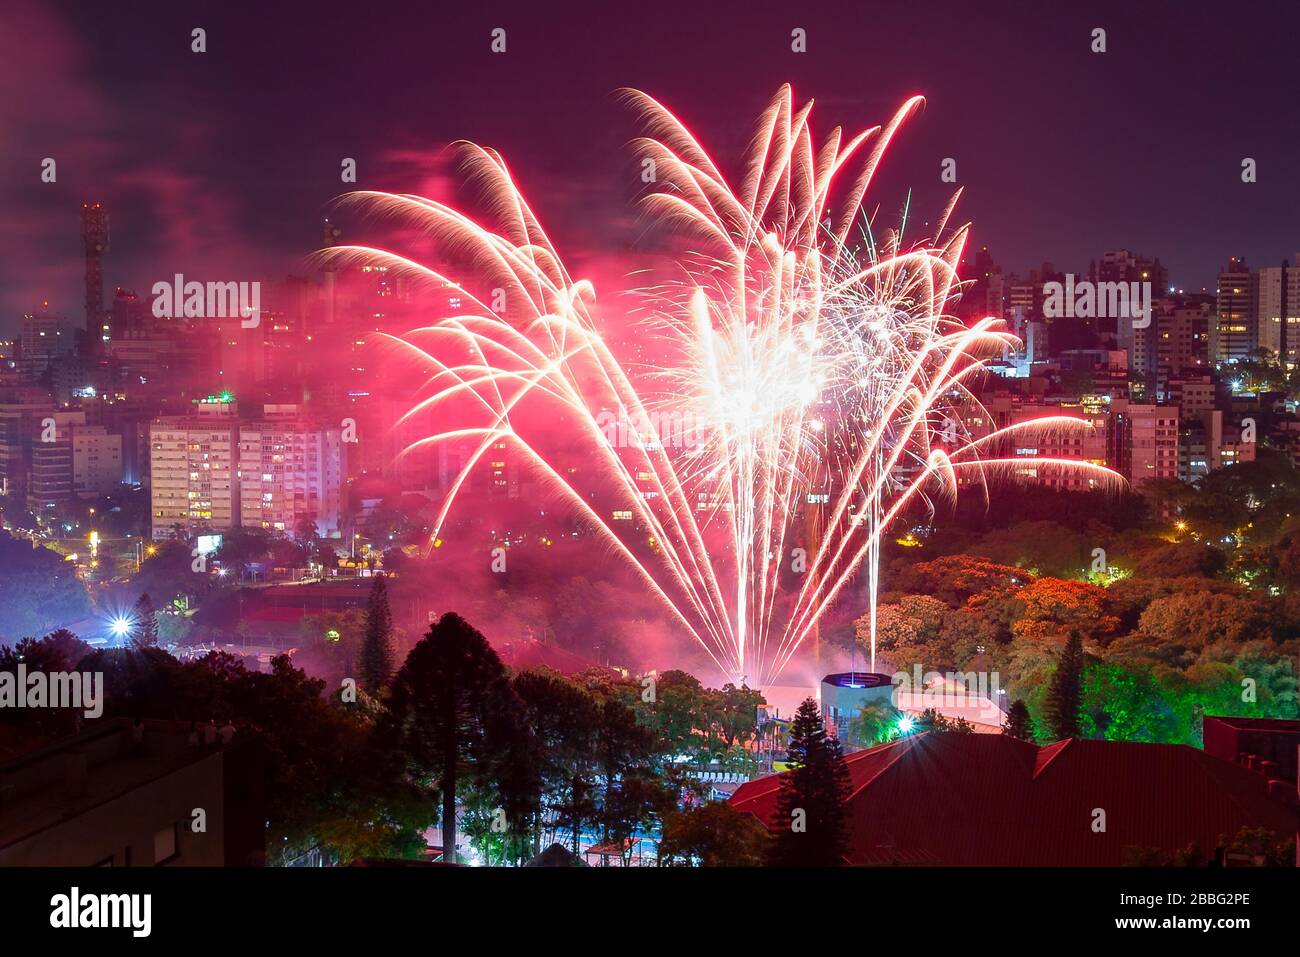 Célébration du nouvel an avec feux d'artifice devant les gratte-ciel de Porto Alegre, Brésil illuminé la nuit. Bâtiments résidentiels et parc avec arbres. Banque D'Images